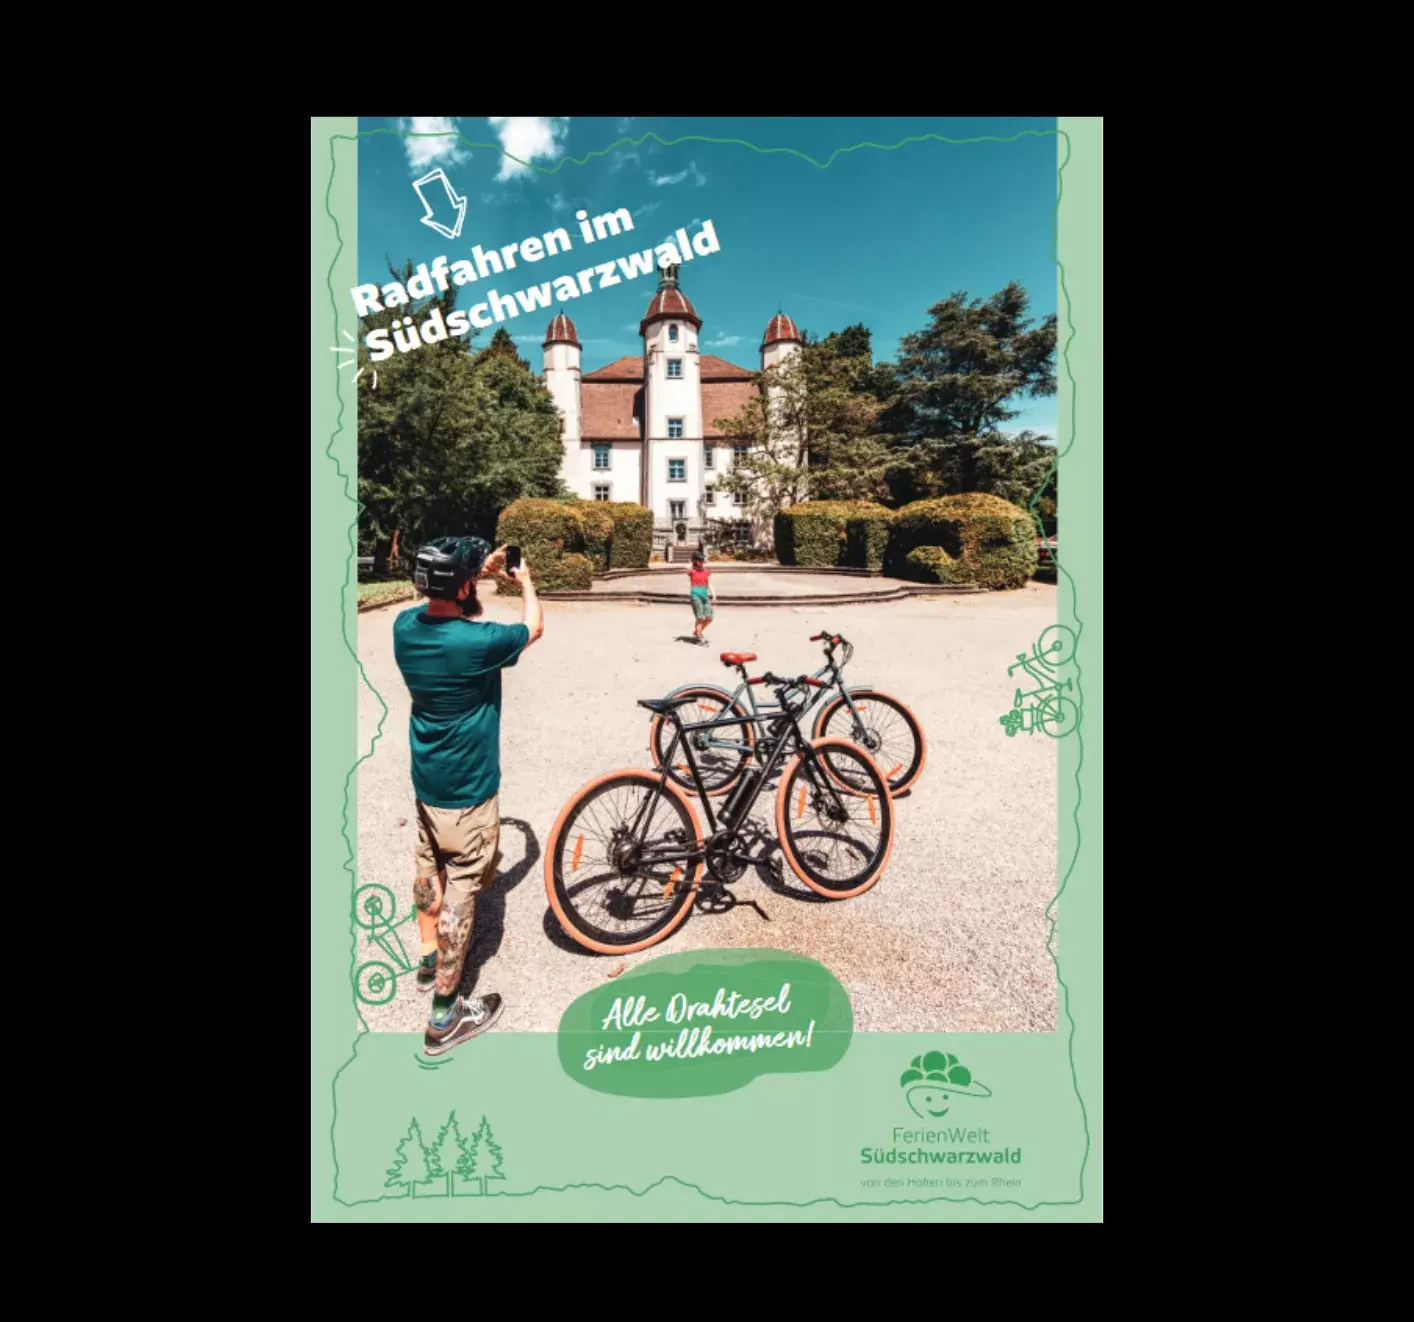 Bild zu FerienWelt Südschwarzwald: Radfahren im Südschwarzwald